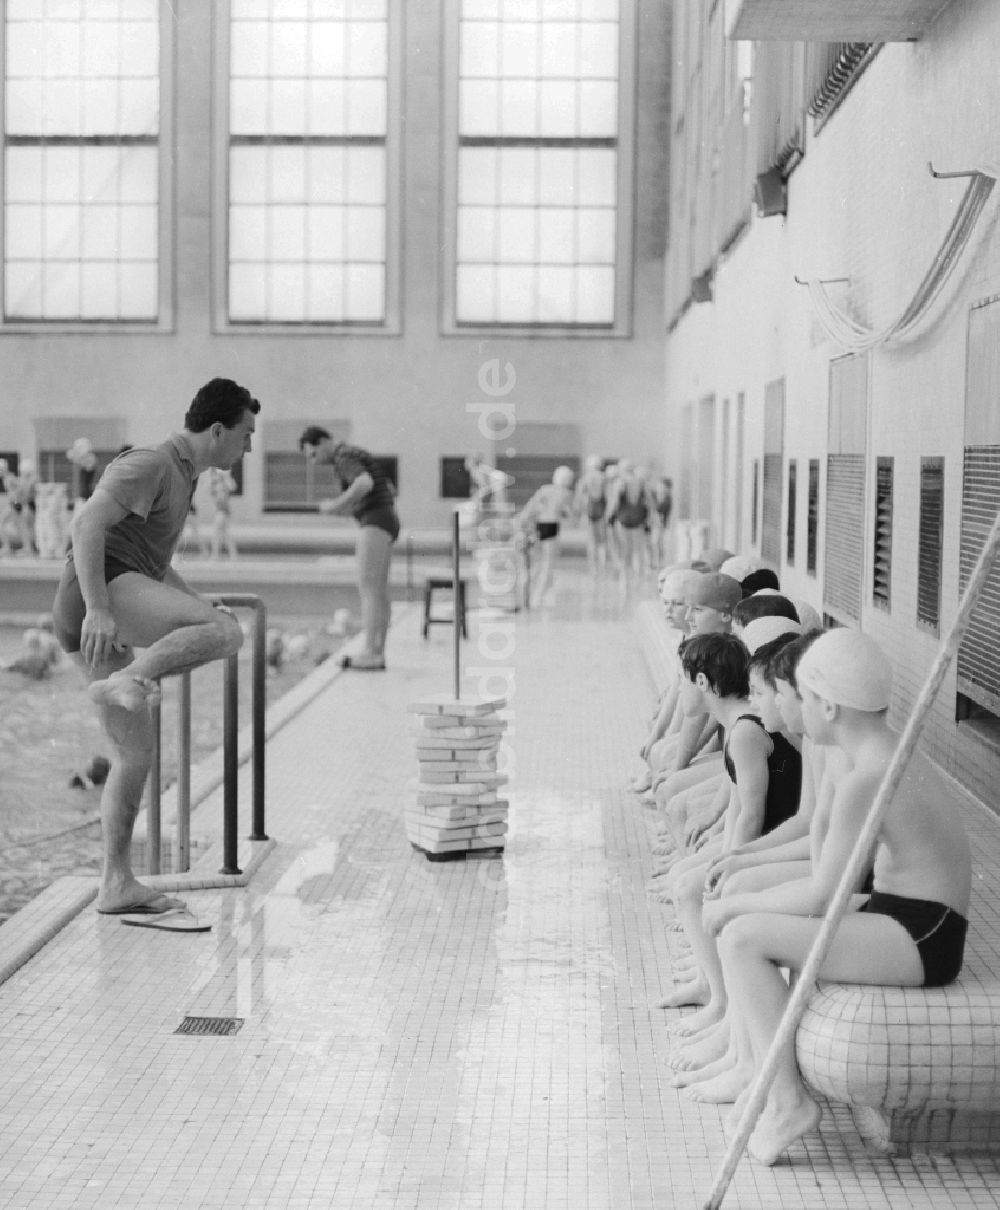 DDR-Fotoarchiv: Berlin - Schwimmunterricht im Stadtbad Mitte „James Simon“ in Berlin, der ehemaligen Hauptstadt der DDR, Deutsche Demokratische Republik